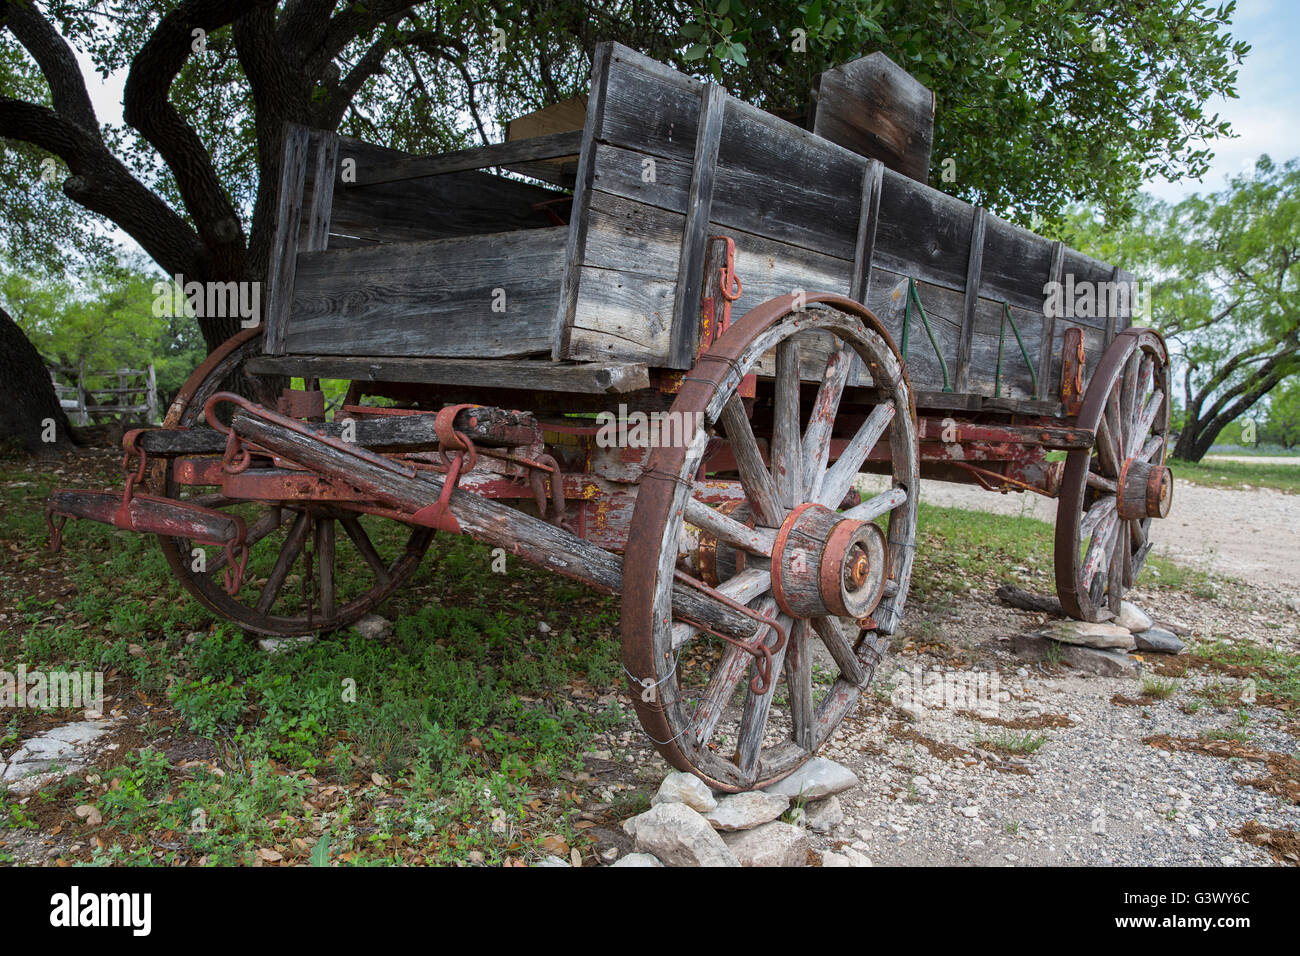 Texas wagon at ranch Stock Photo